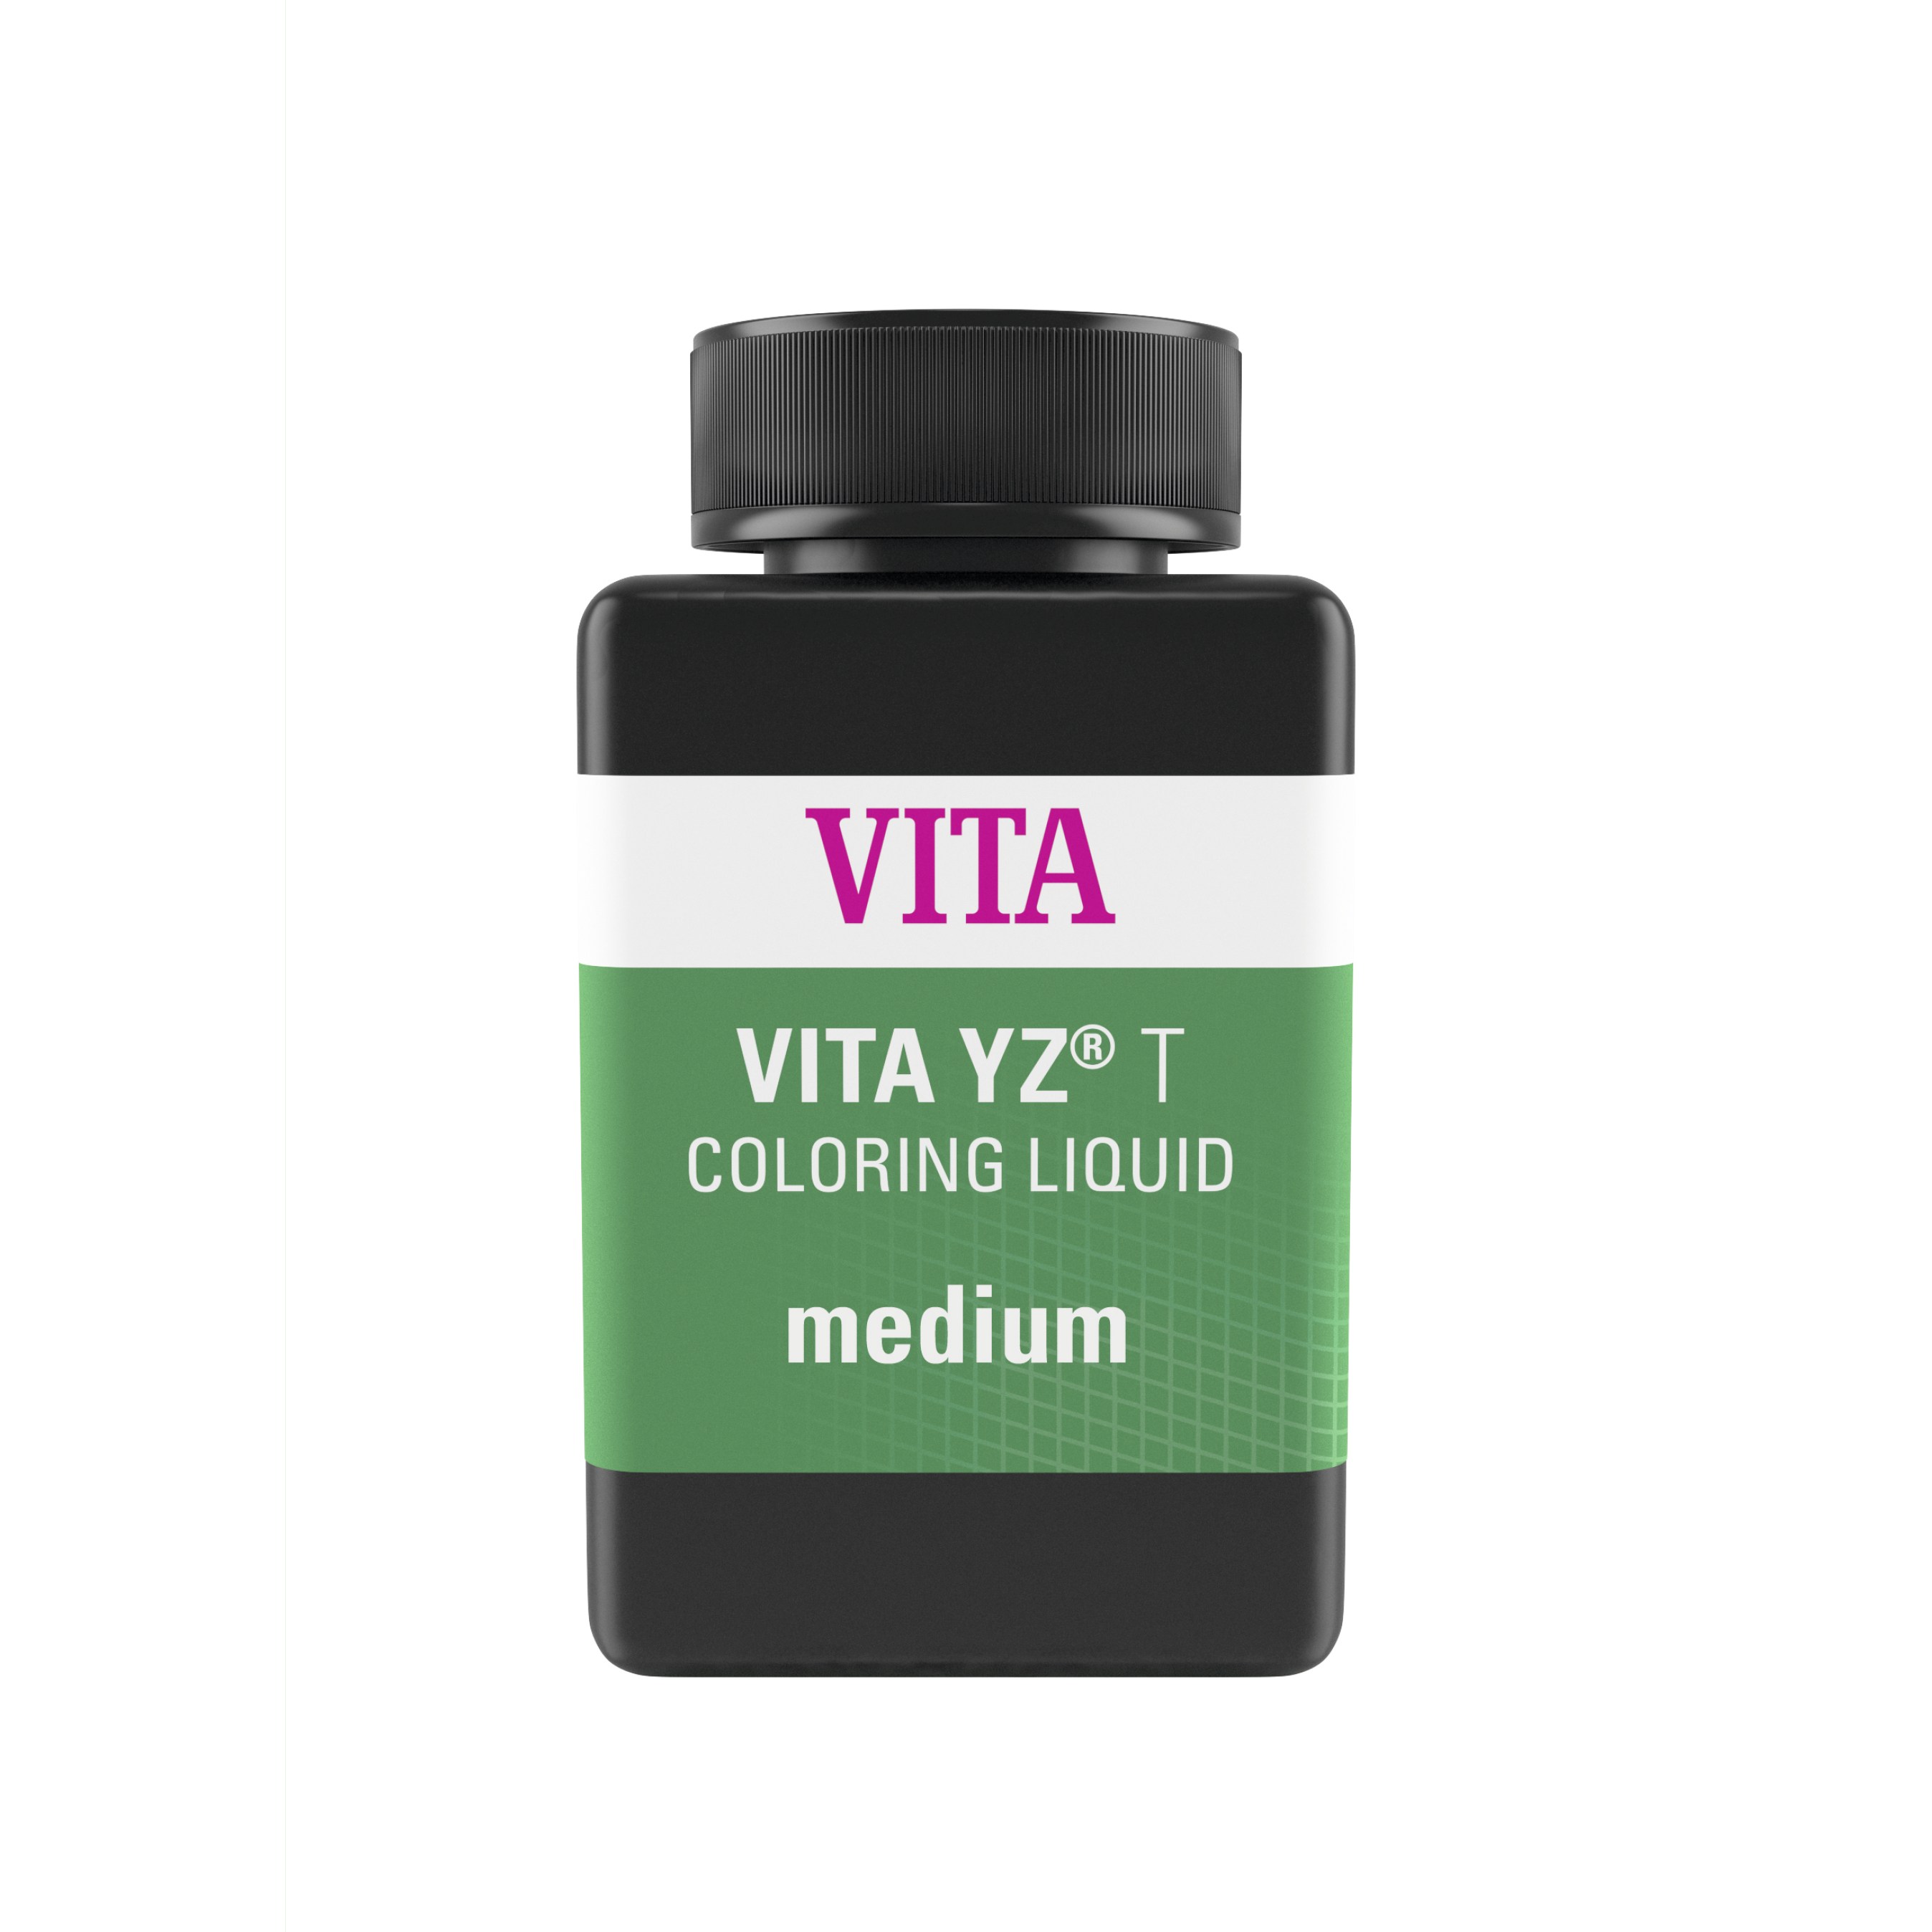 Colorant liquide YZ T COLORING LIQUID medium